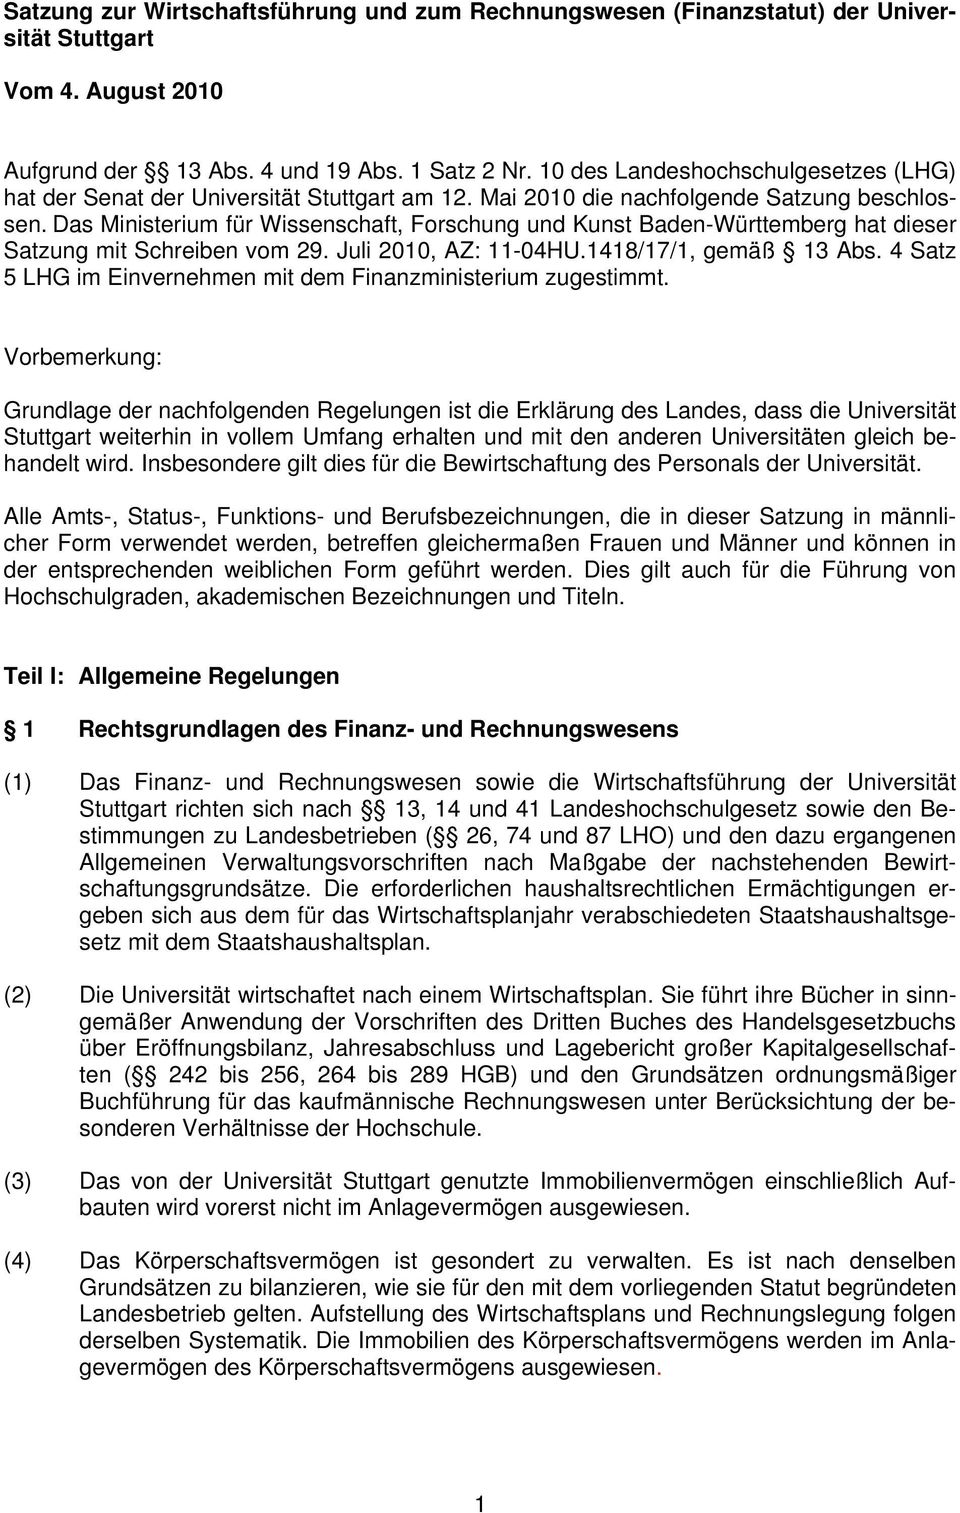 Das Ministerium für Wissenschaft, Forschung und Kunst Baden-Württemberg hat dieser Satzung mit Schreiben vom 29. Juli 2010, AZ: 11-04HU.1418/17/1, gemäß 13 Abs.